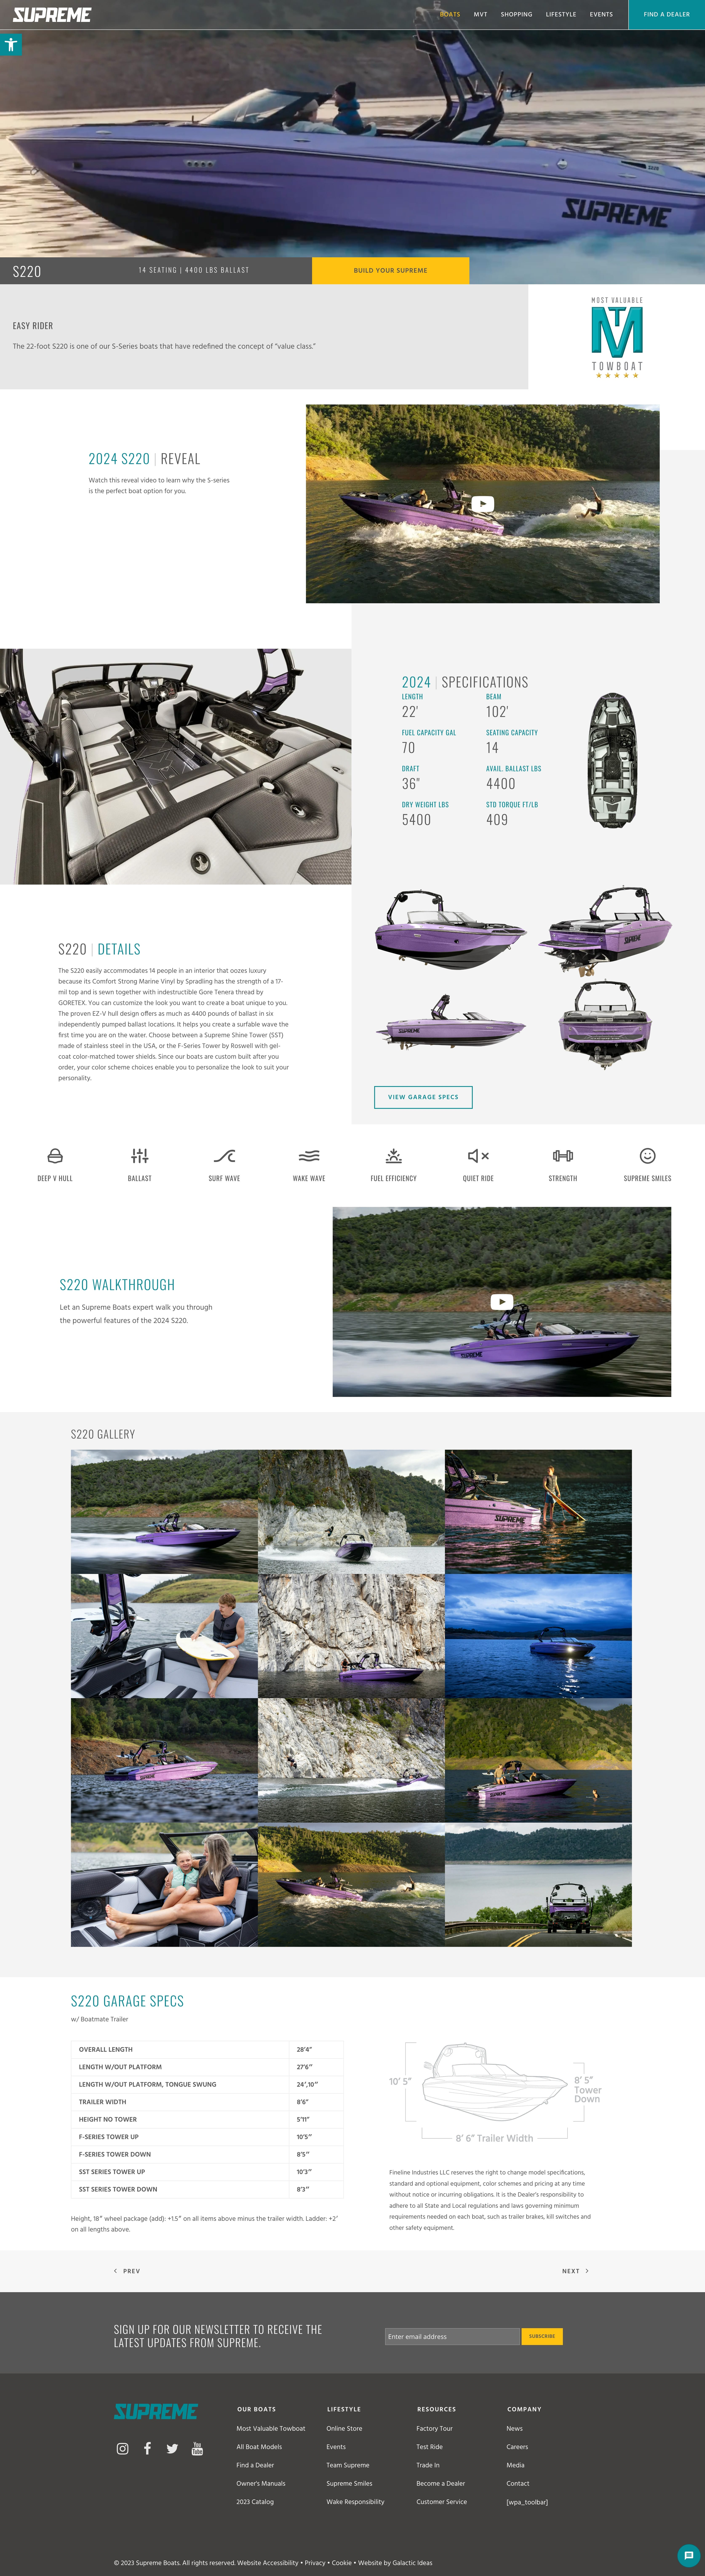 Supreme S220 boat model web page